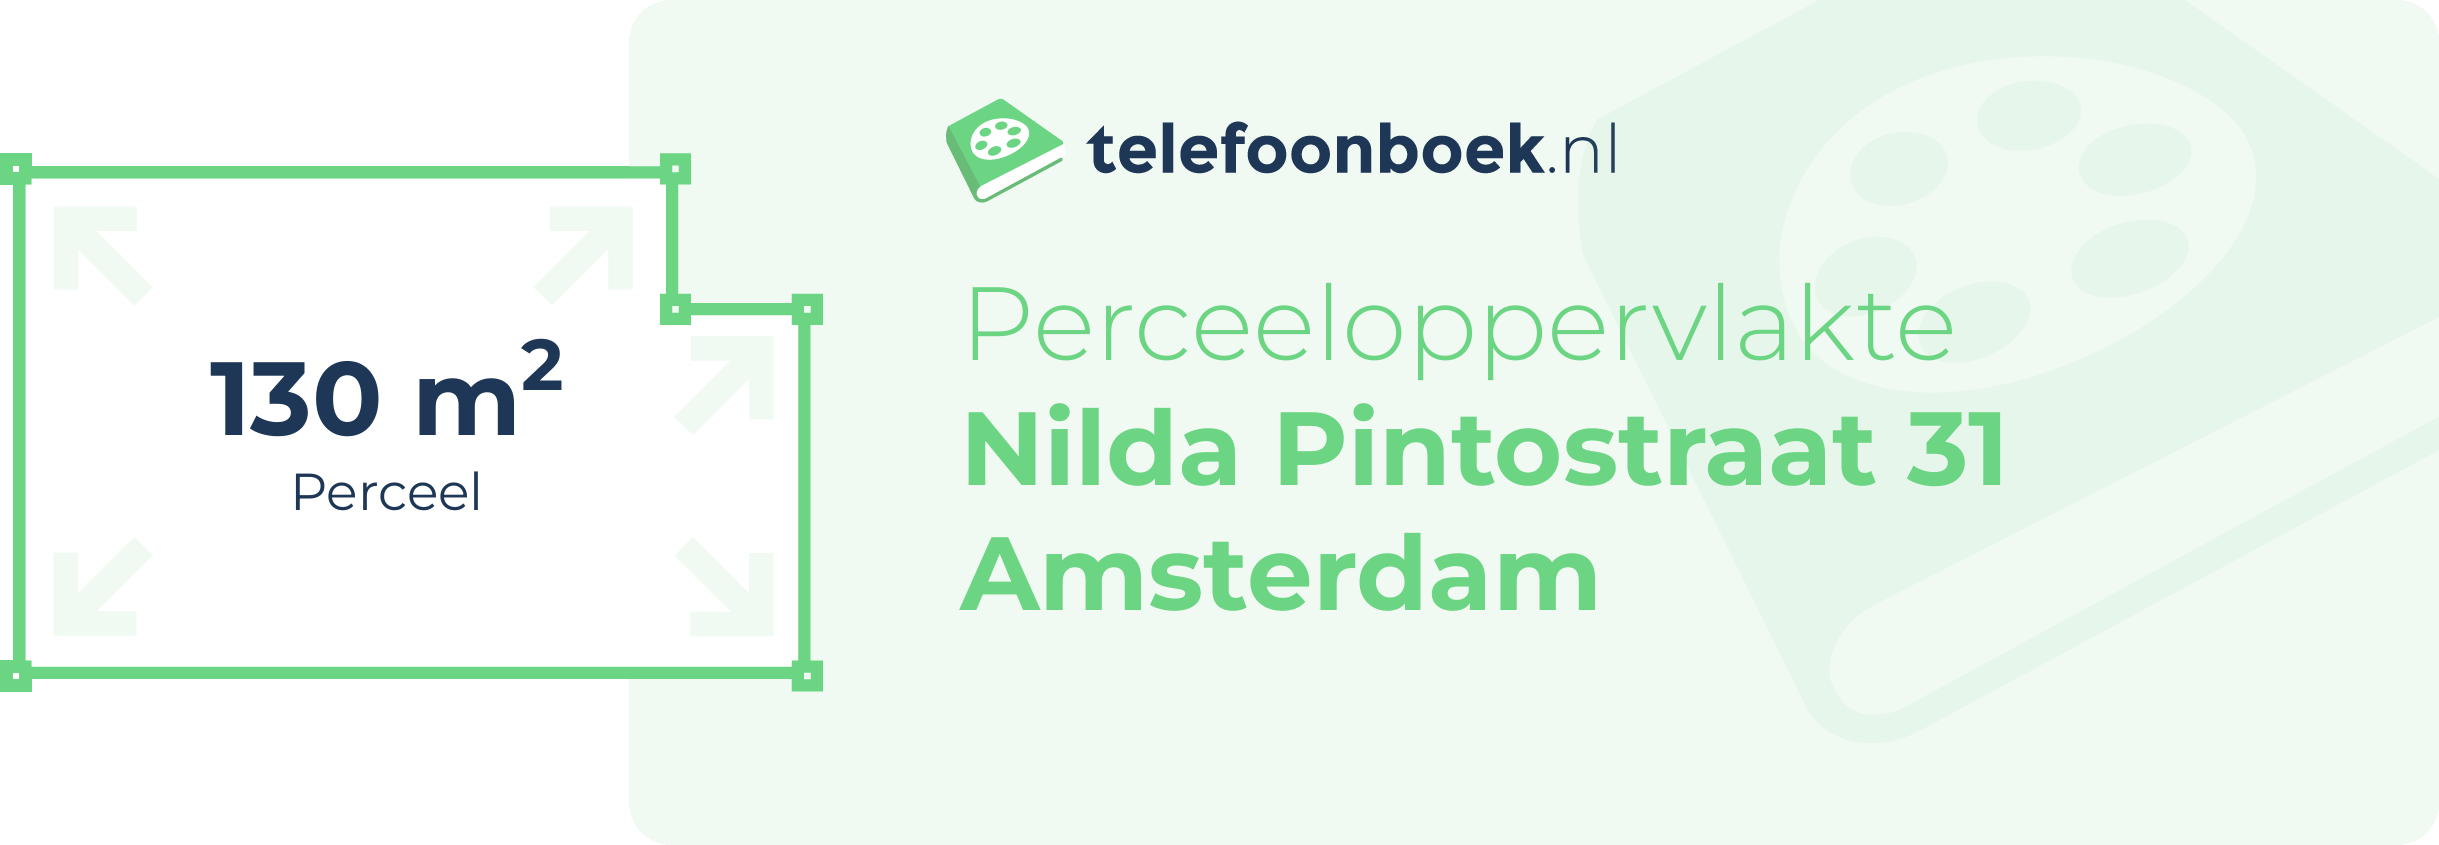 Perceeloppervlakte Nilda Pintostraat 31 Amsterdam